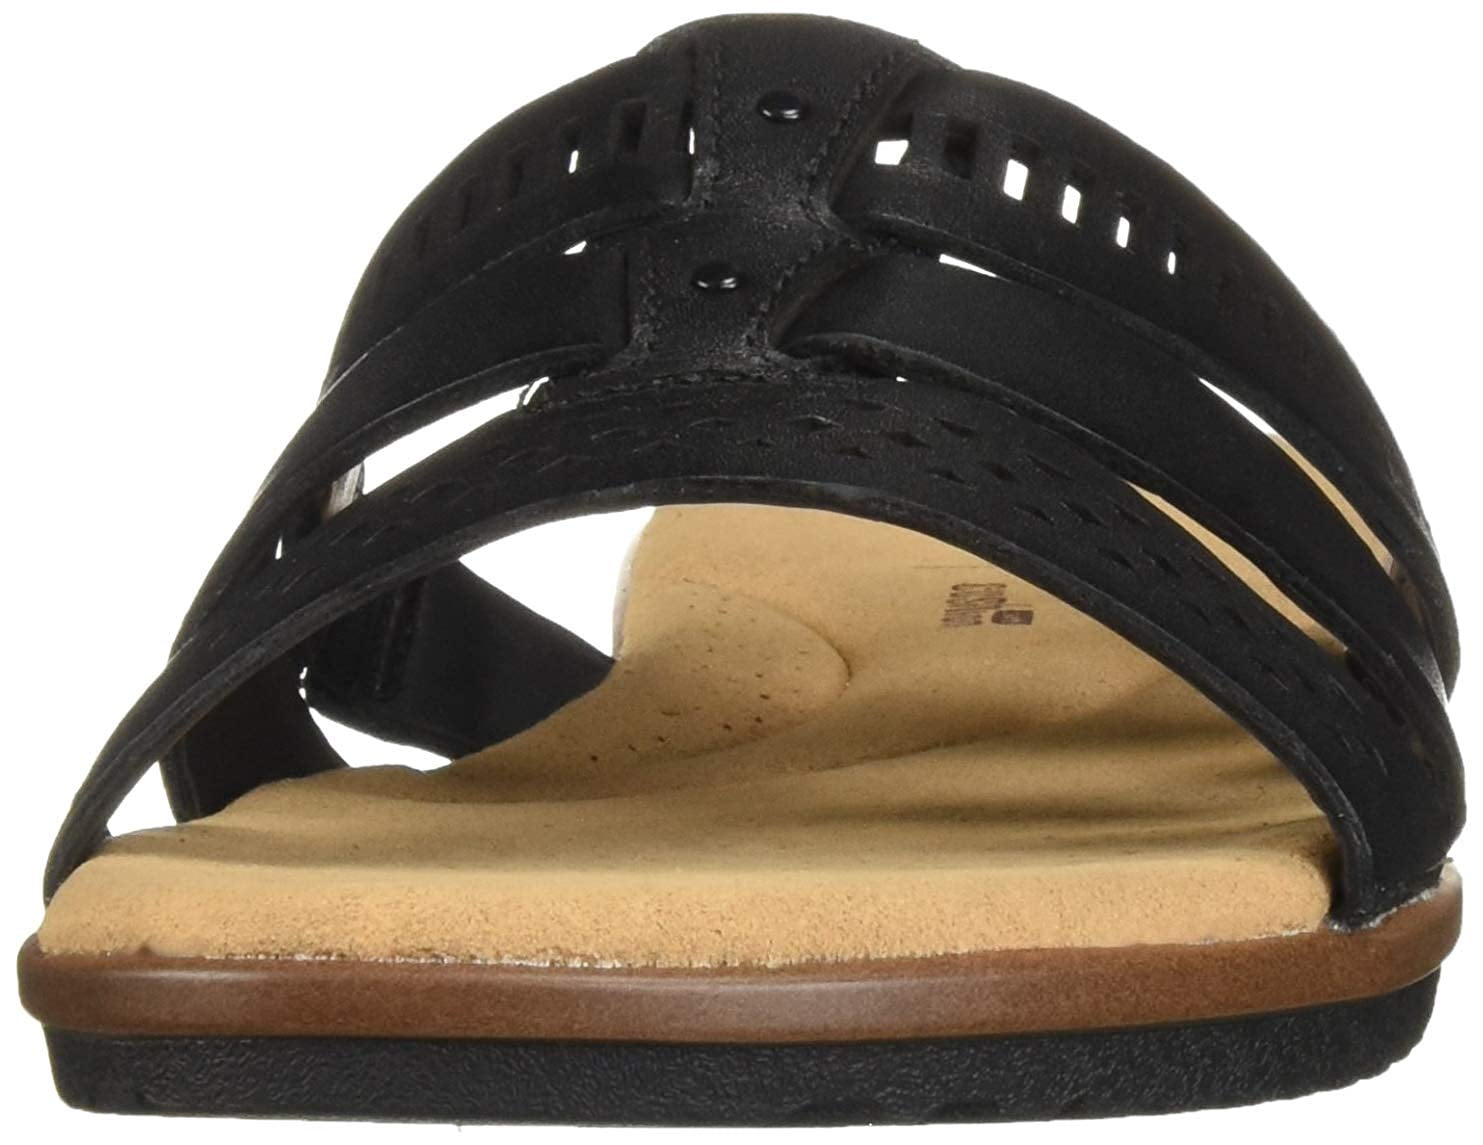 clarks women's kele willow slide sandal